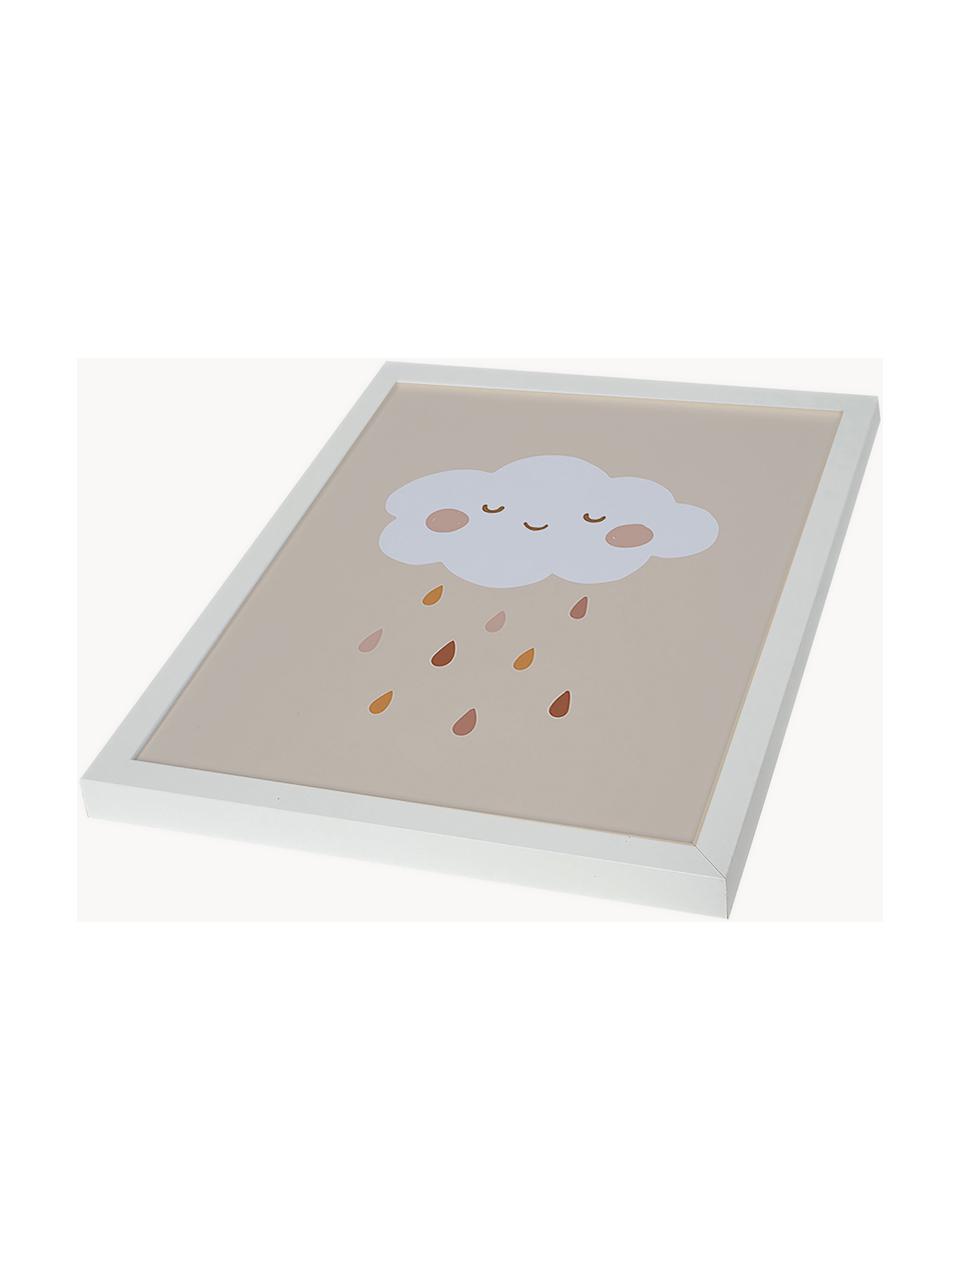 Gerahmter Digitaldruck Lovely Rain, Rahmen: Buchenholz, FSC zertifizi, Bild: Digitaldruck auf Papier, , Front: Acrylglas, Weiß, Hellbeige, Brauntöne, B 33 x H 43 cm